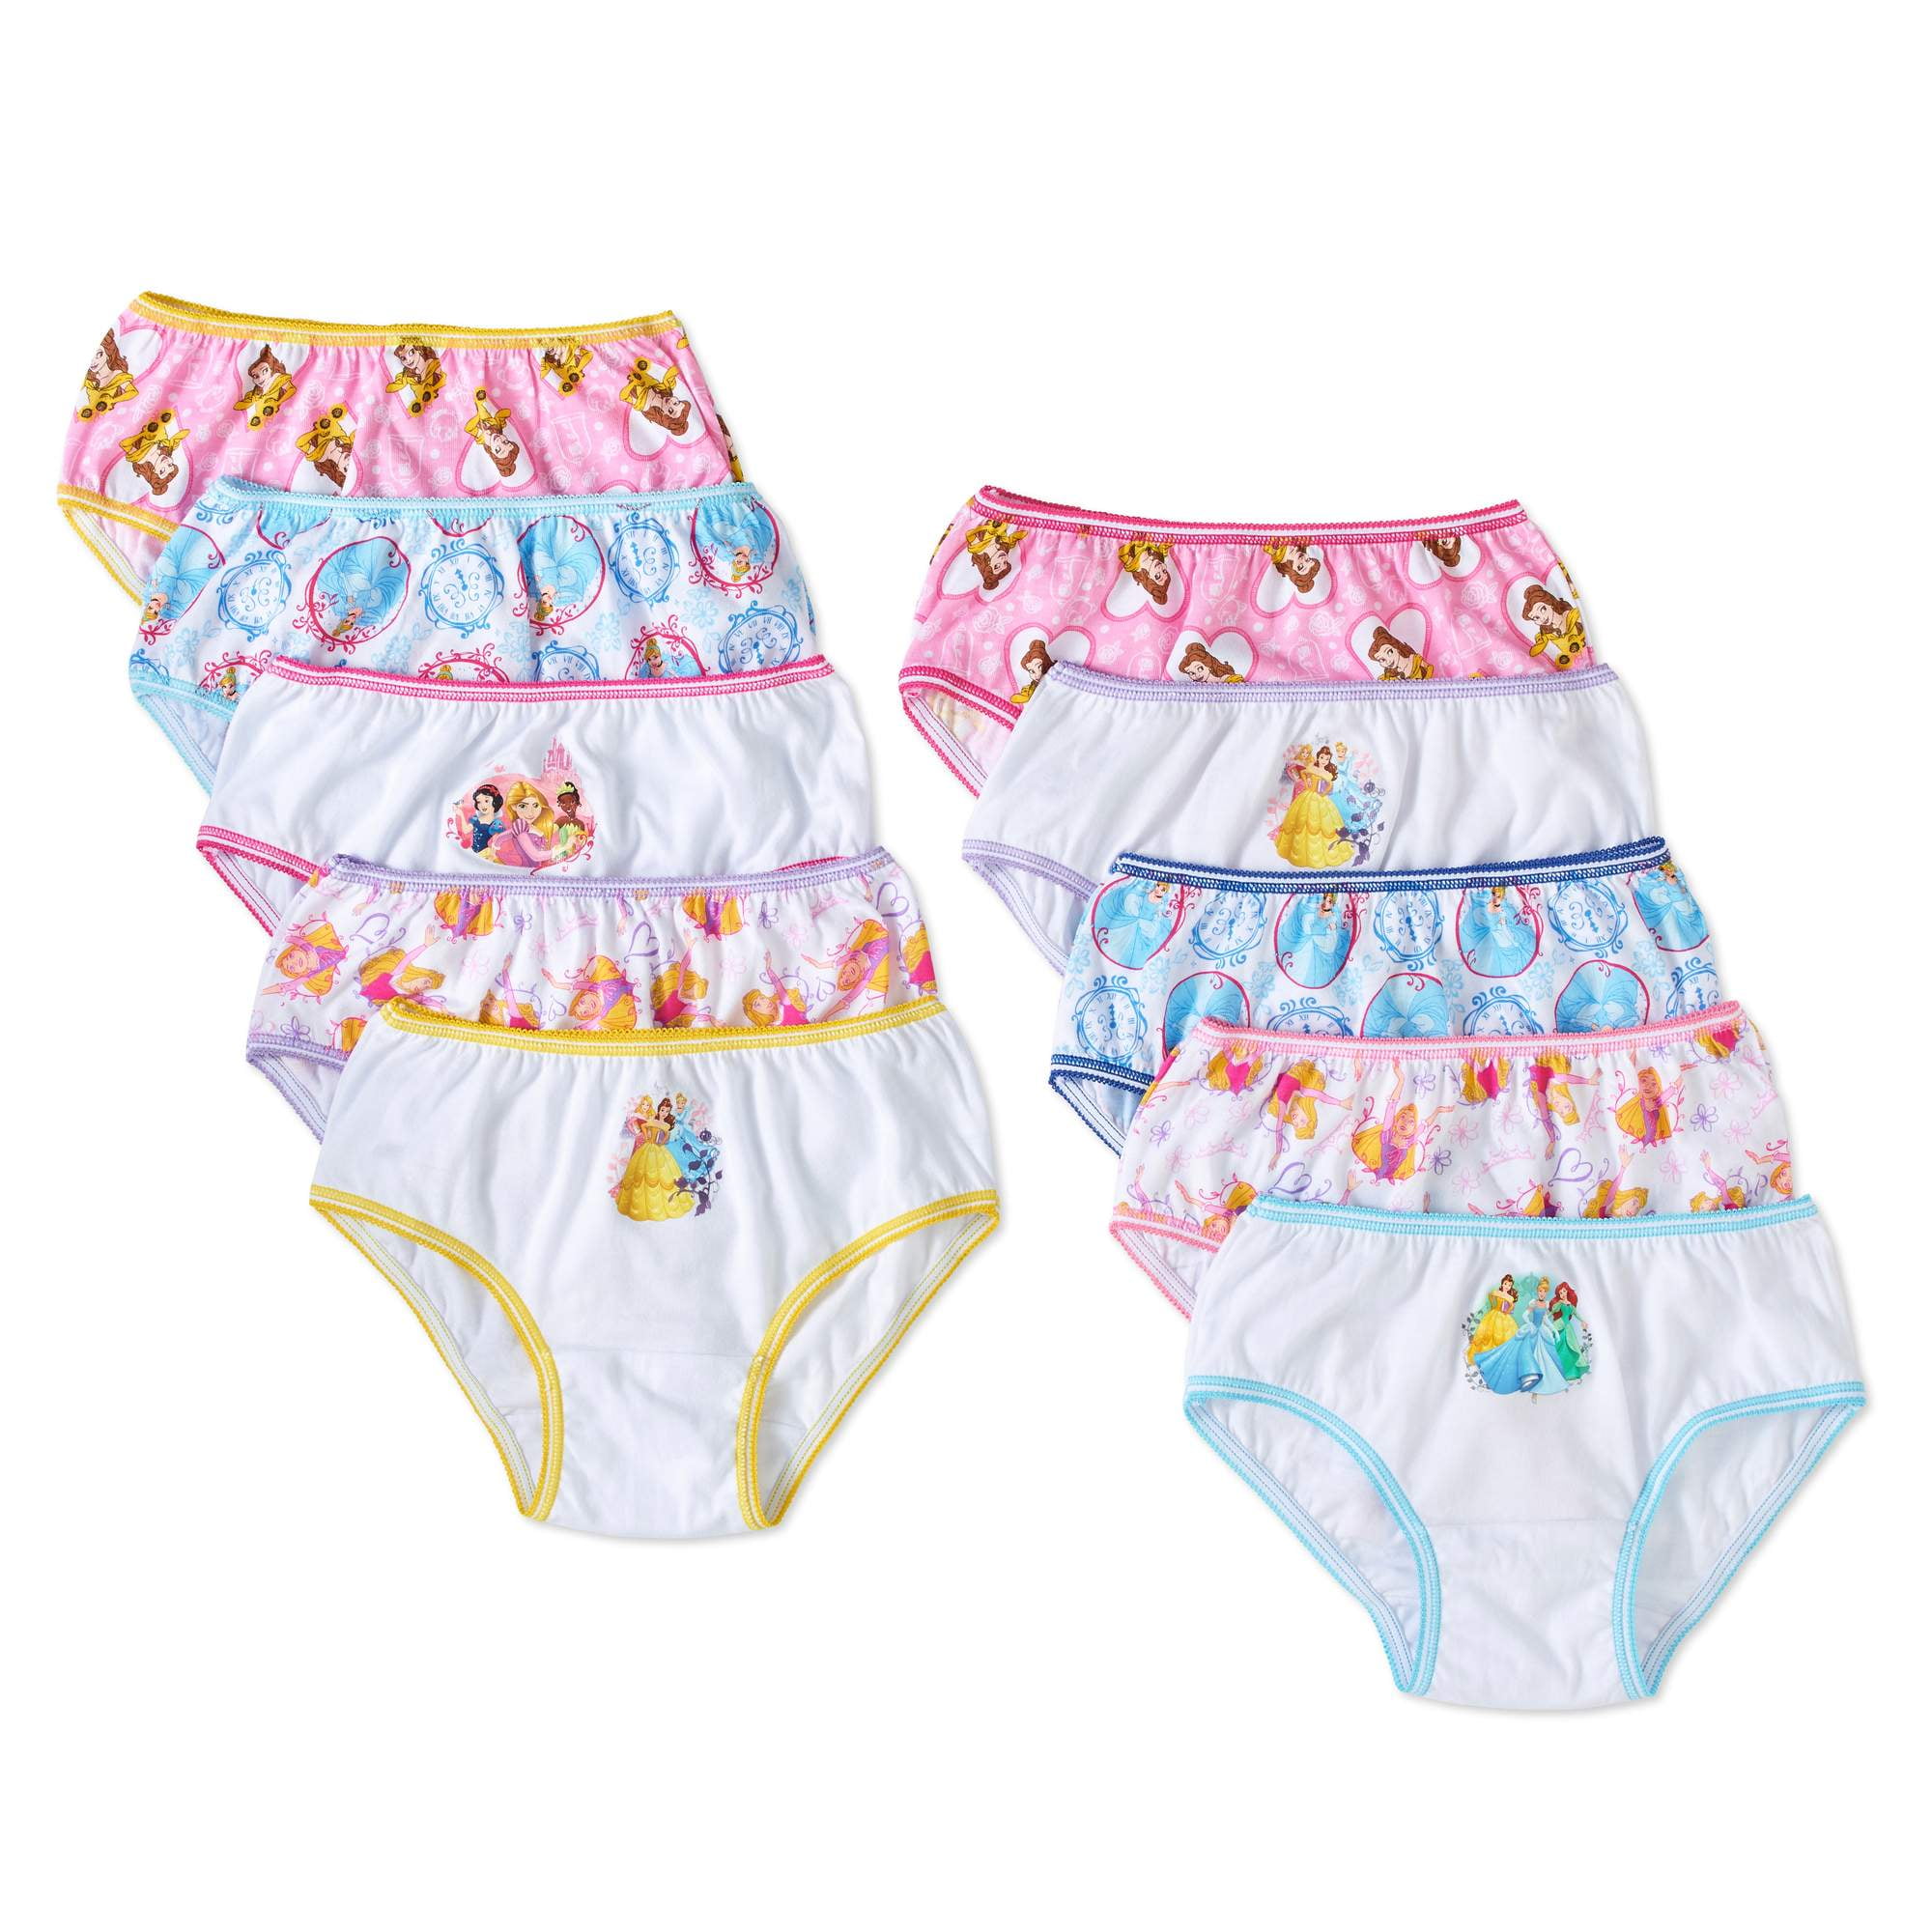 Disney Princess 10-Pack Girls Panties Underwear Cinderella Belle